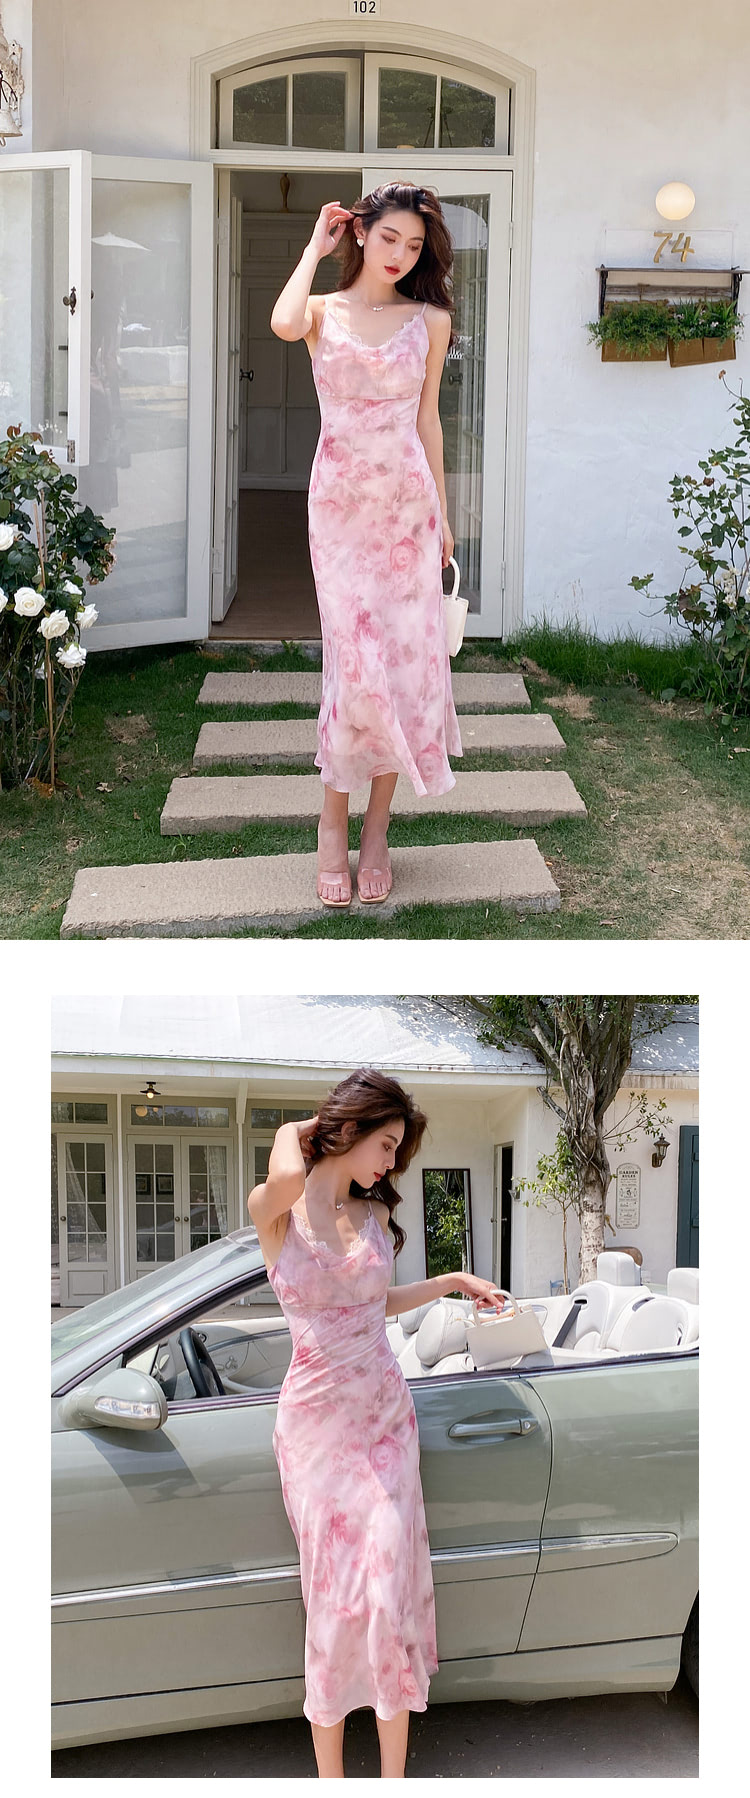 Ladies-Sweet-Floral-Printed-Summer-Casual-Pink-Long-Slip-Dress15